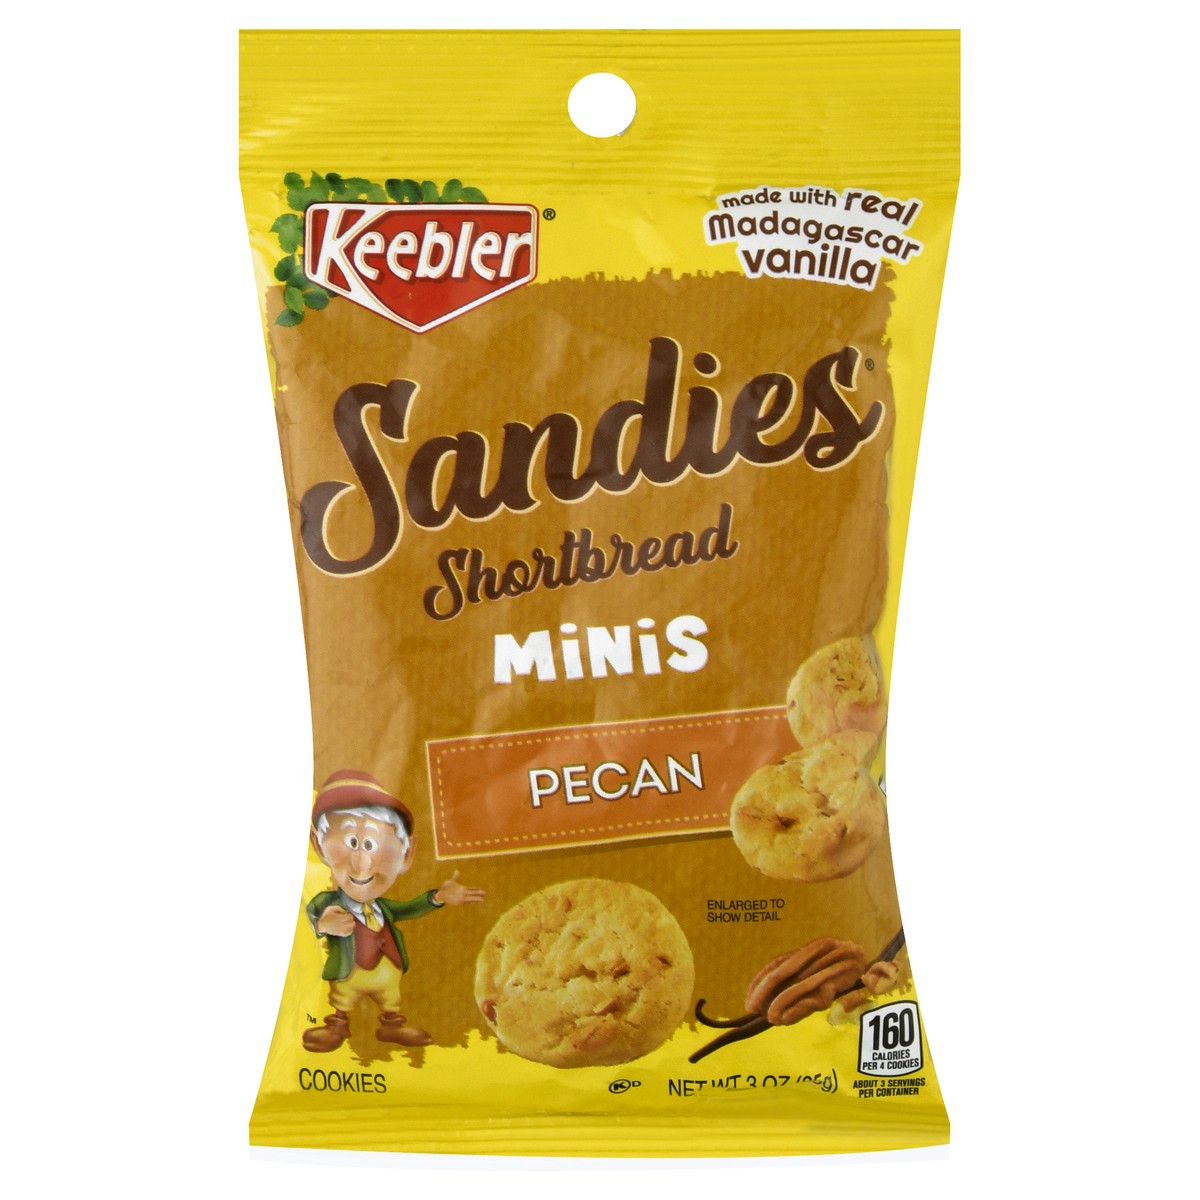 slide 1 of 12, Keebler Sandies Shortbread Minis Pecan Cookies 3 oz, 3 oz